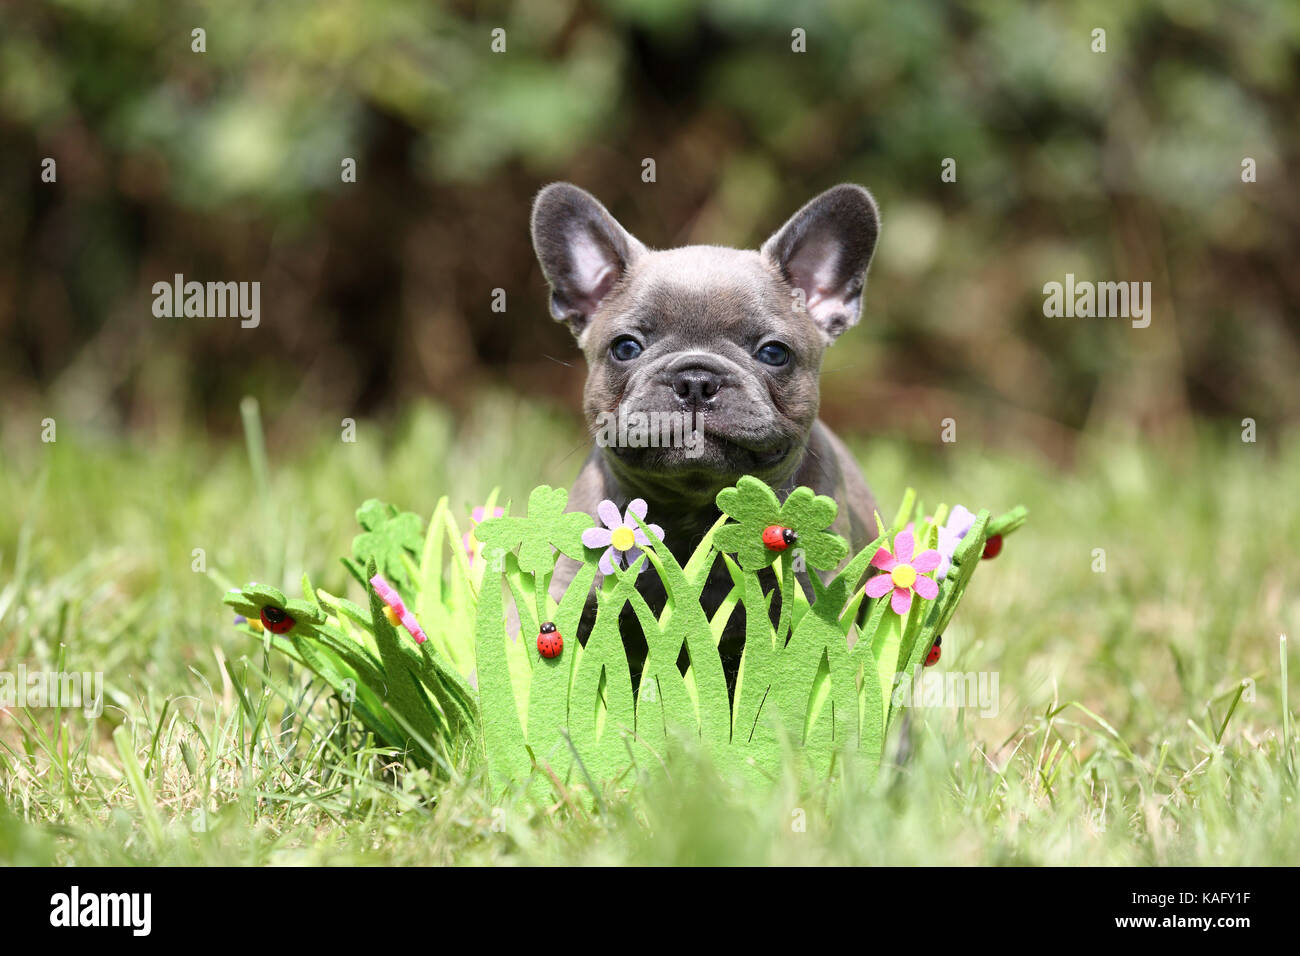 Bulldog francese. Cucciolo (6 settimane di età) seduto in una ghirlanda di fiori ed erba, fatta di feltro. Germania Foto Stock